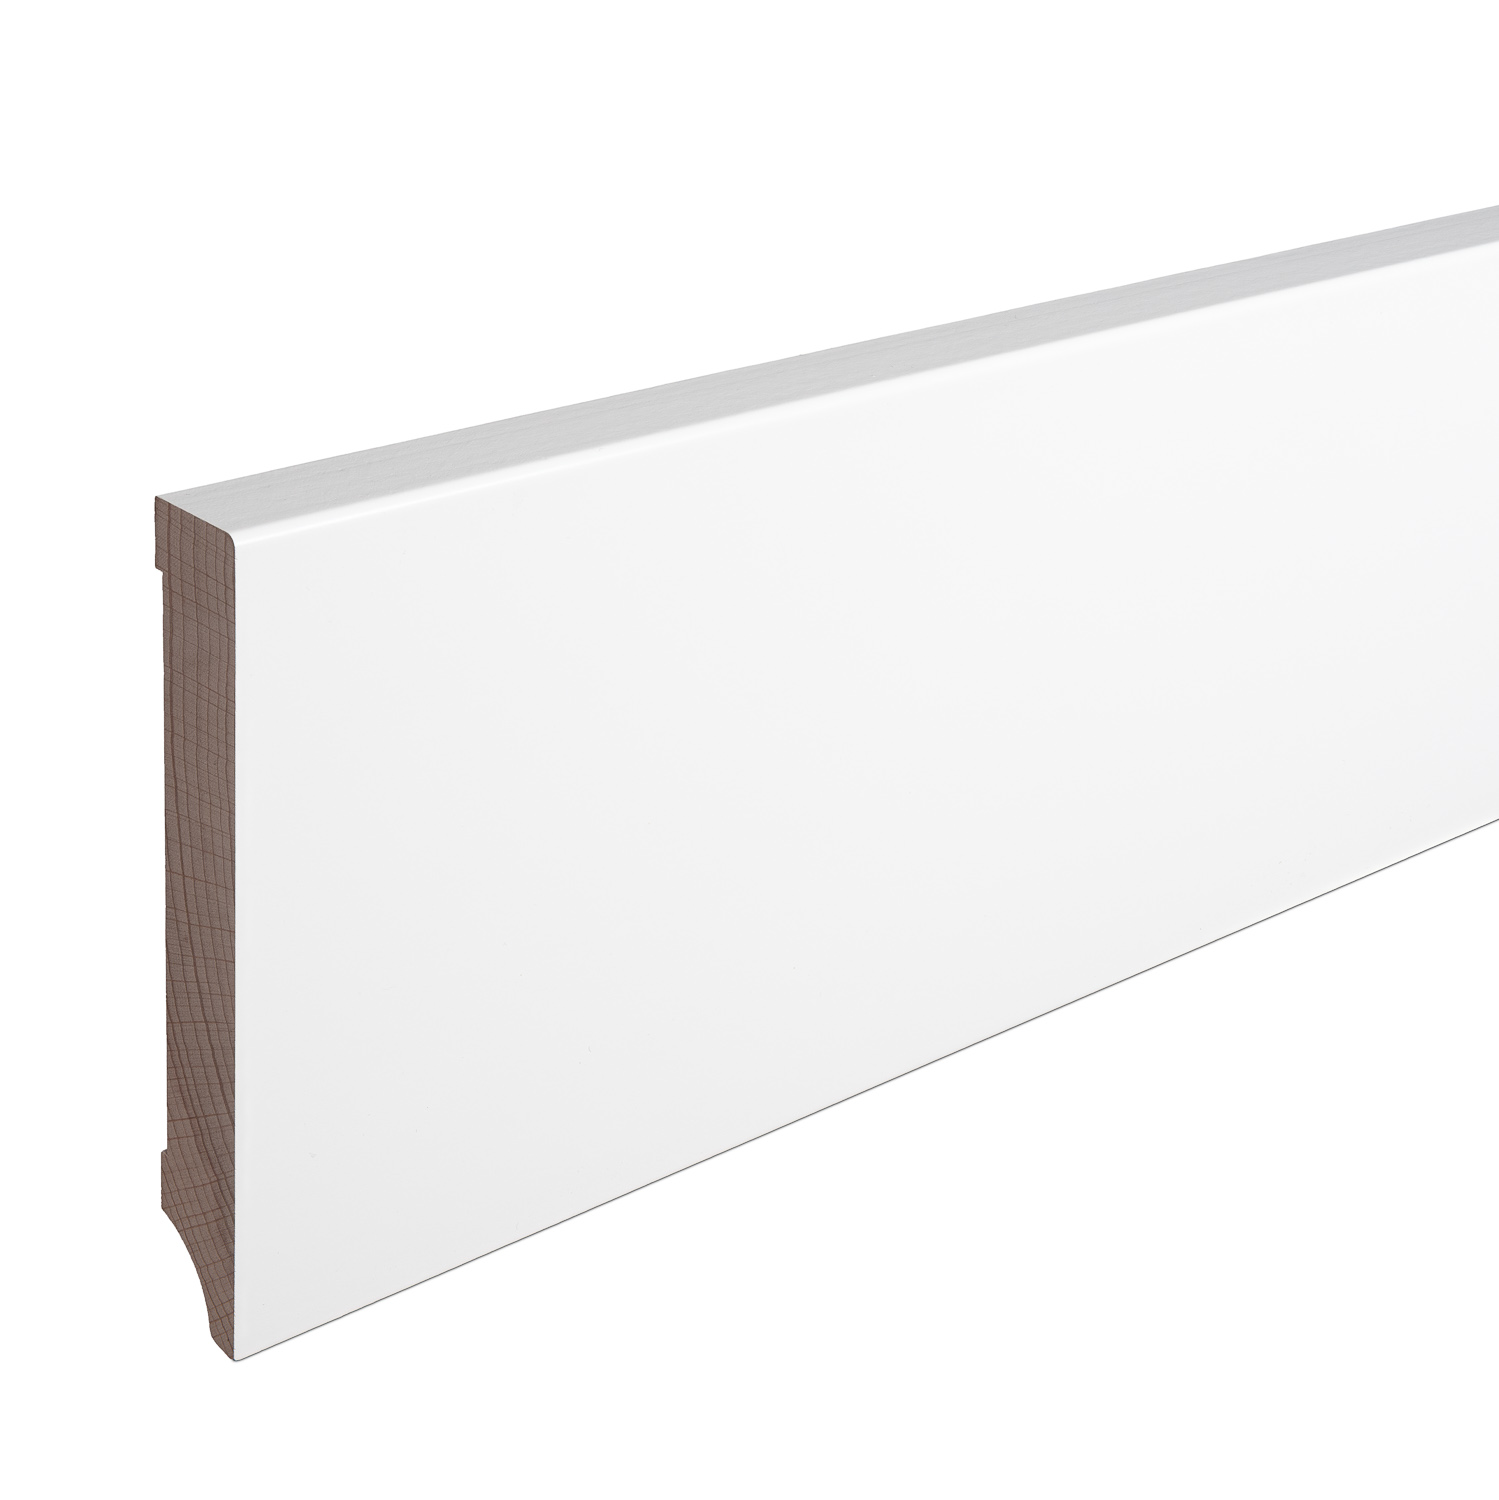 Weichholz Fußboden Sockelleisten Altberliner Profil 12,0 m weiß 21 x 70 mm 